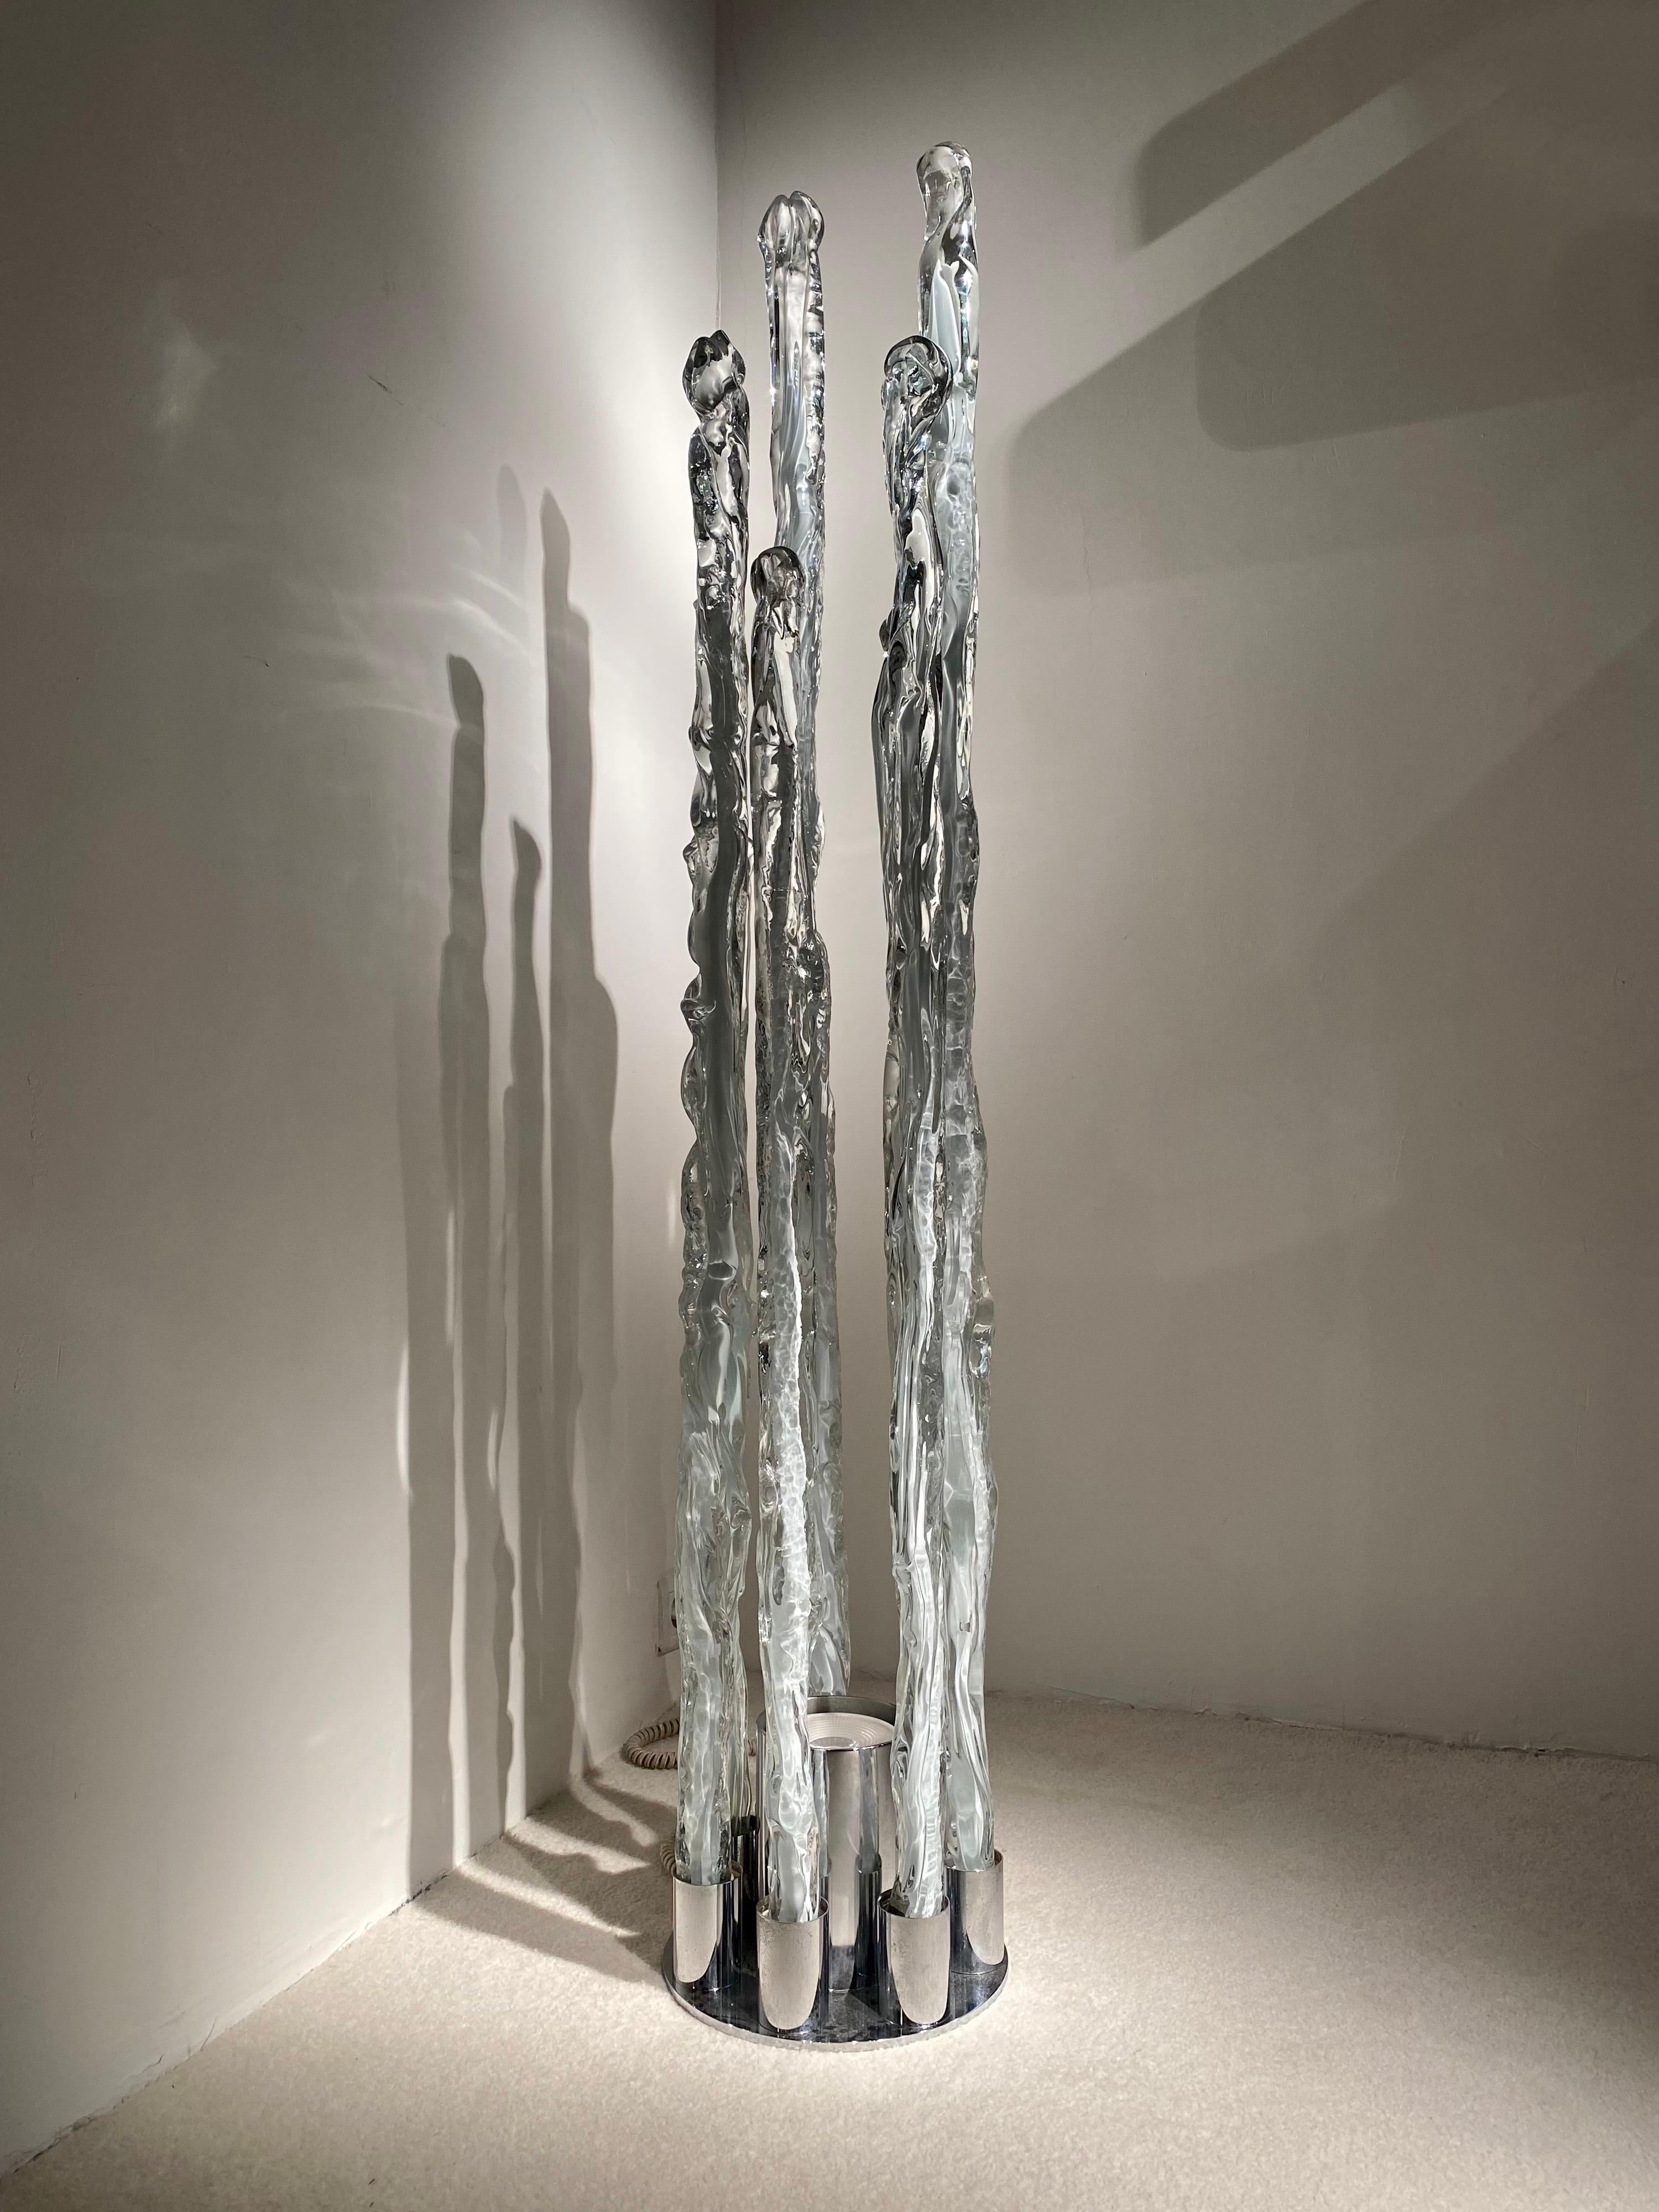 Lampadaire sculptural en verre soufflé de  Murano et un socle en métal chromé.
Conçu par Ettore Fantasia et Gino Poli pour Sothis, intéressant travail de verre soufflé qui lui donne l'apparence de la glace.
L'intensité de la lumière est variable